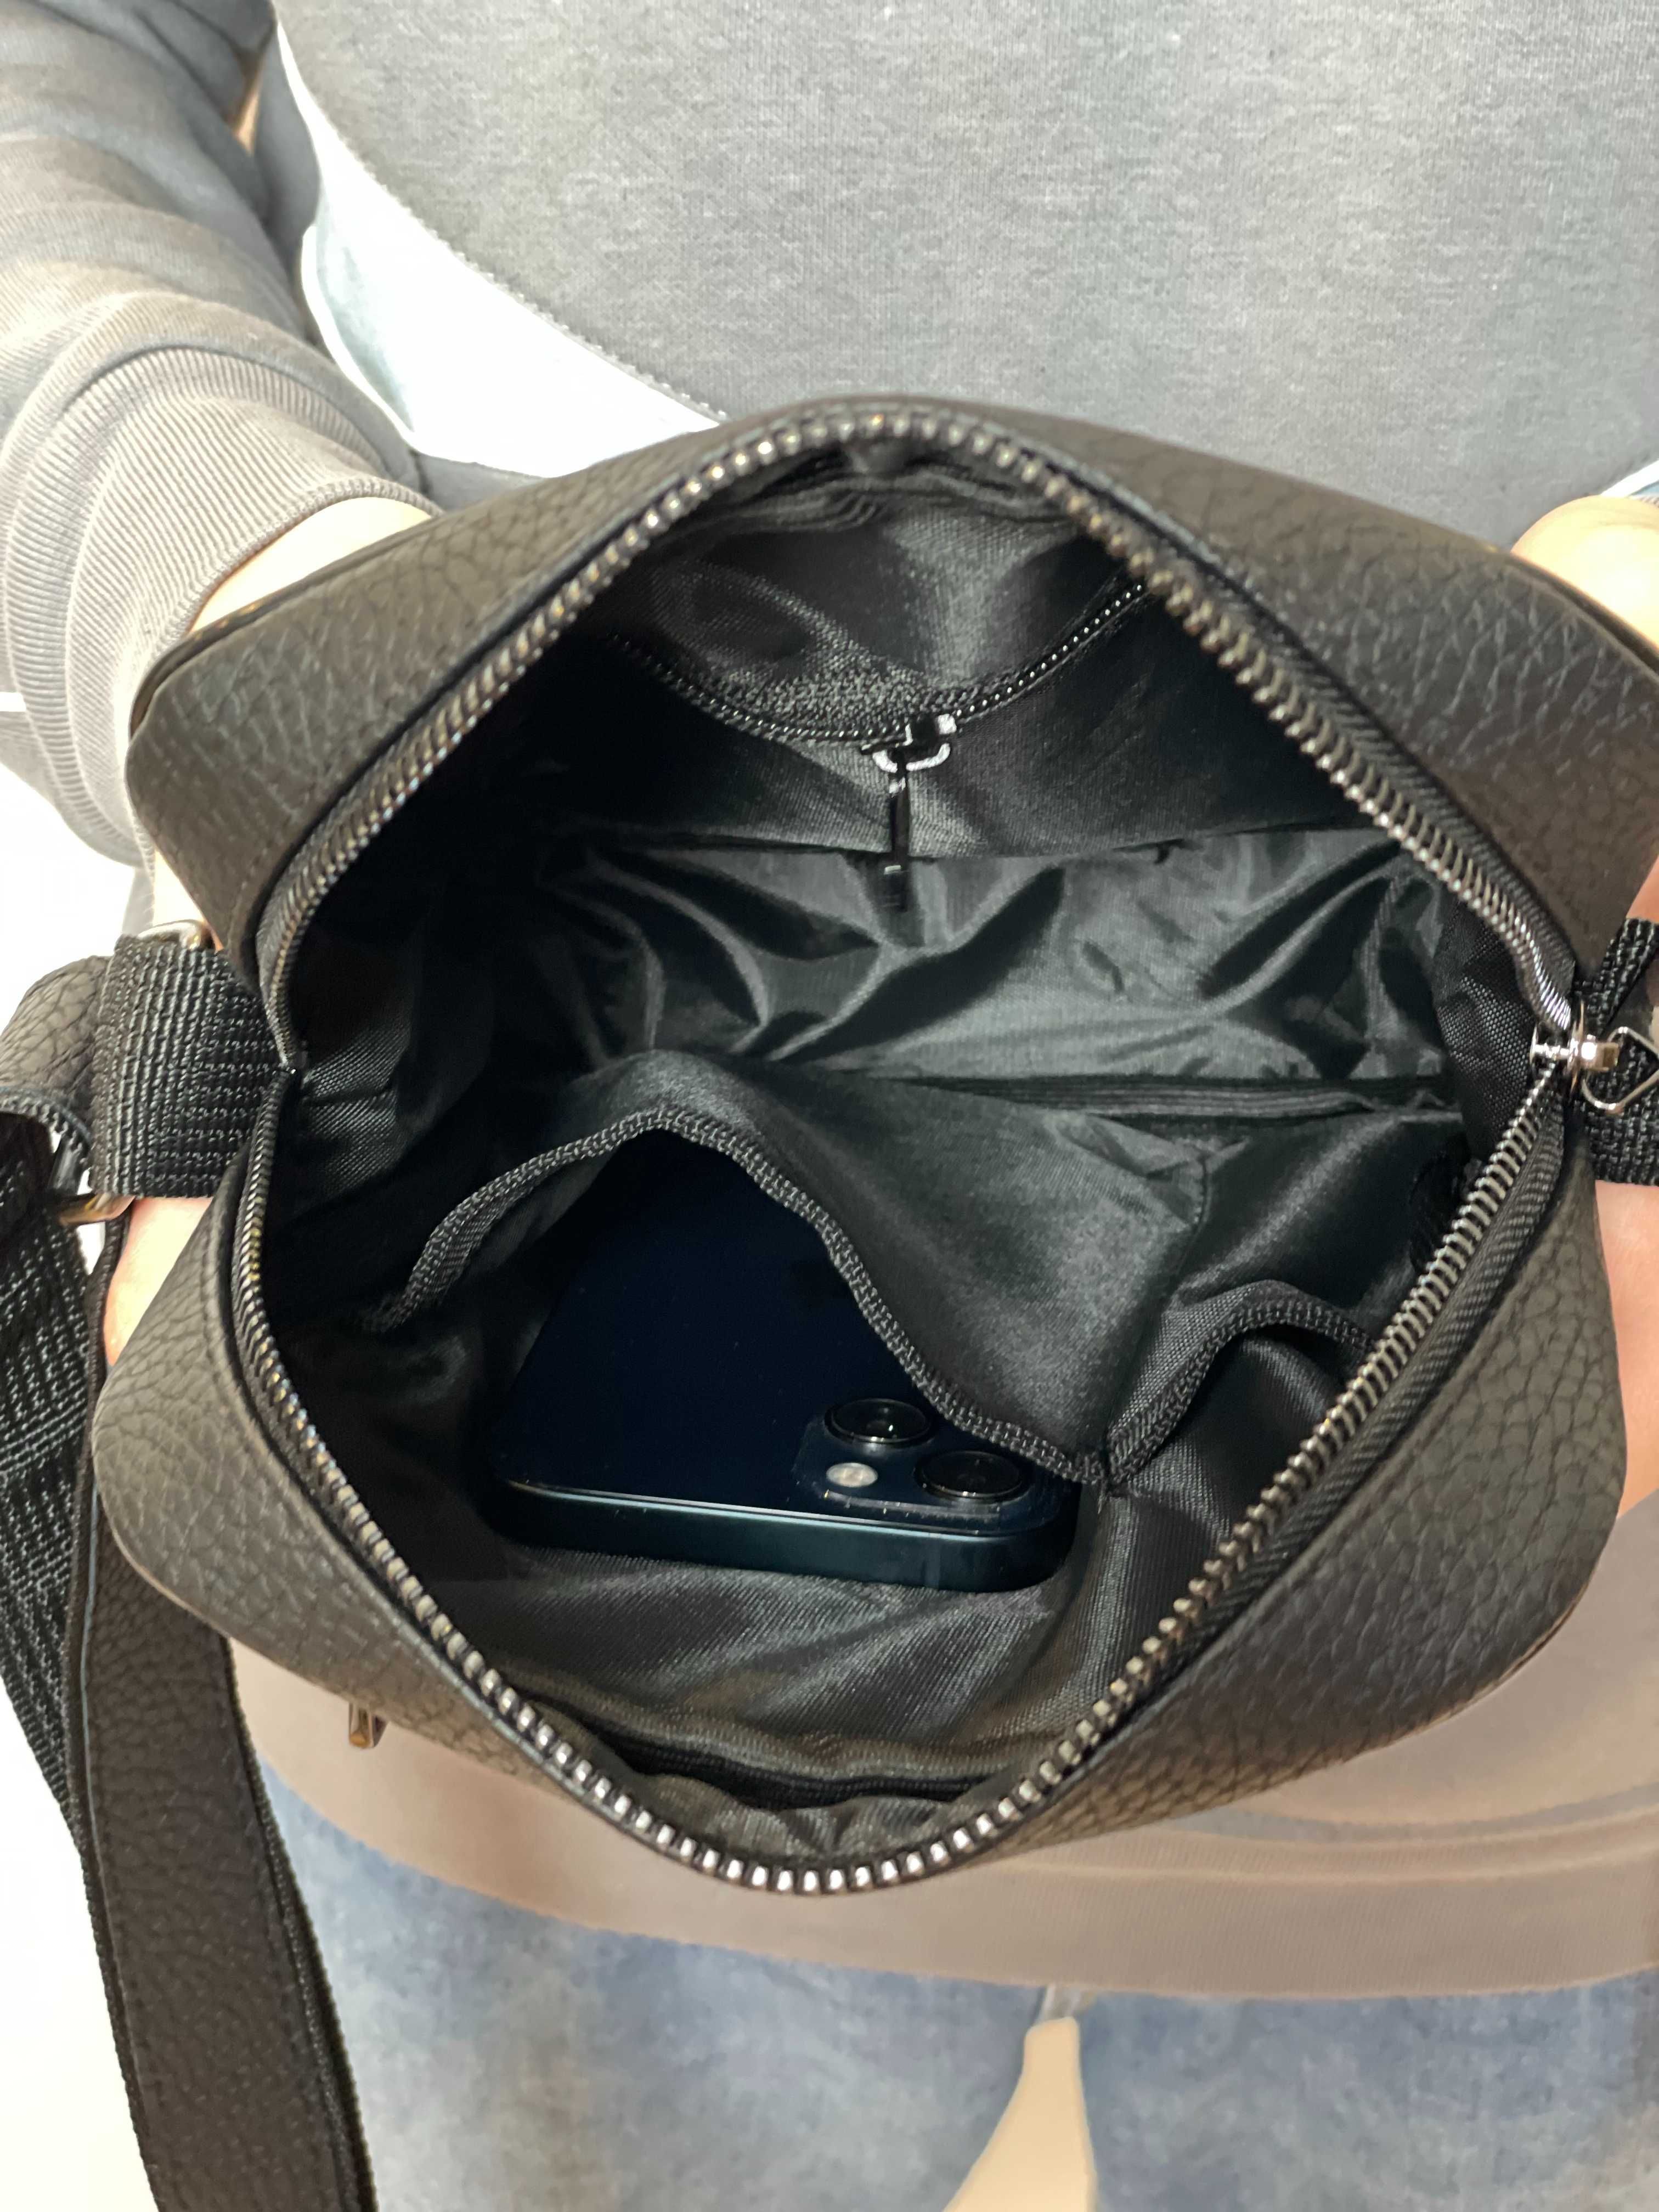 Кожаная сумка - барсетка через плечо | Мужской мессенджер из эко-кожи